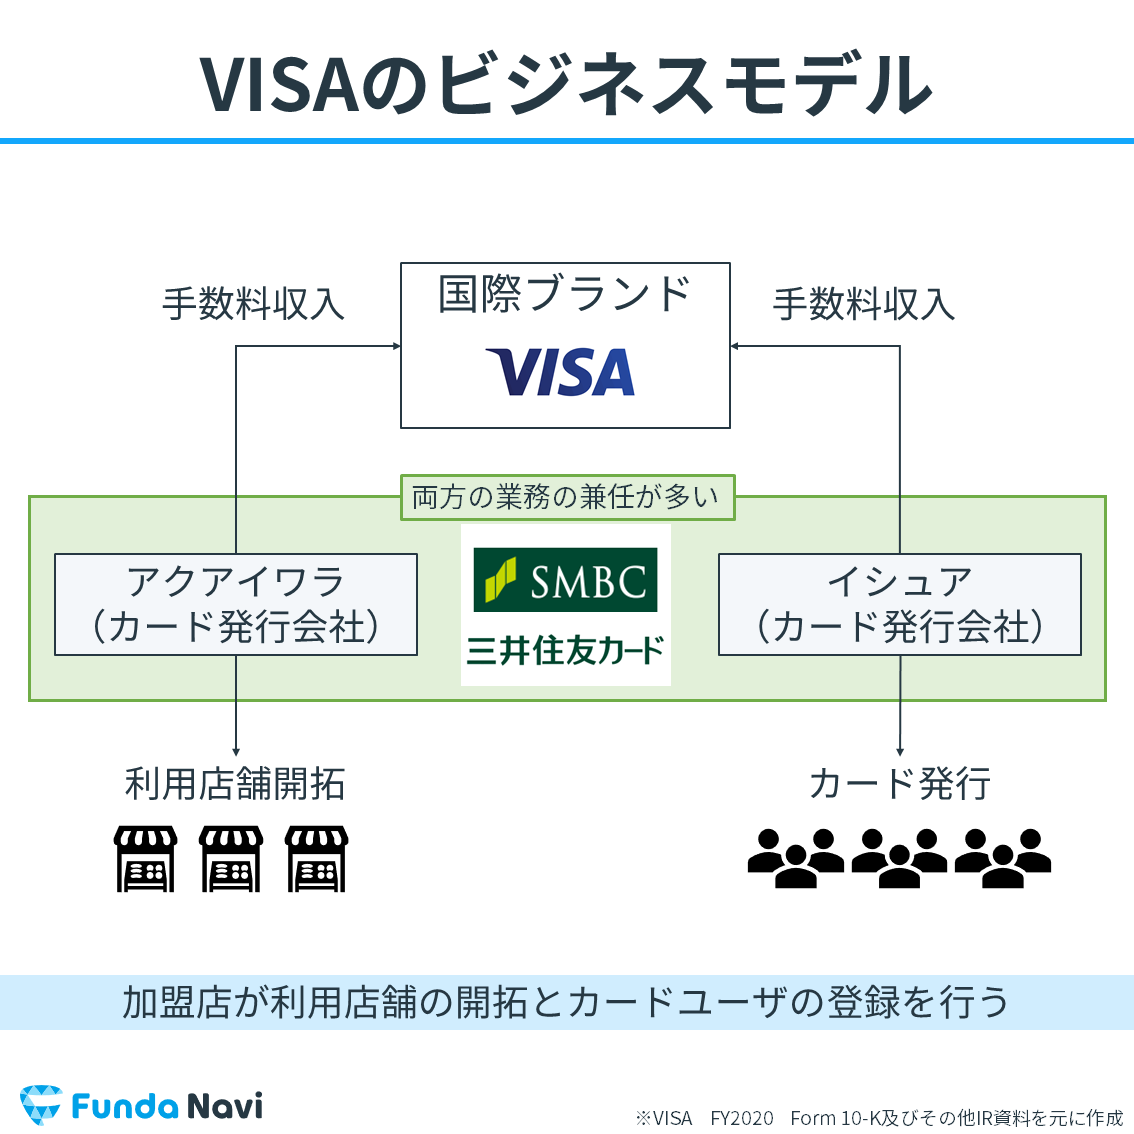 VISAのビジネスモデル